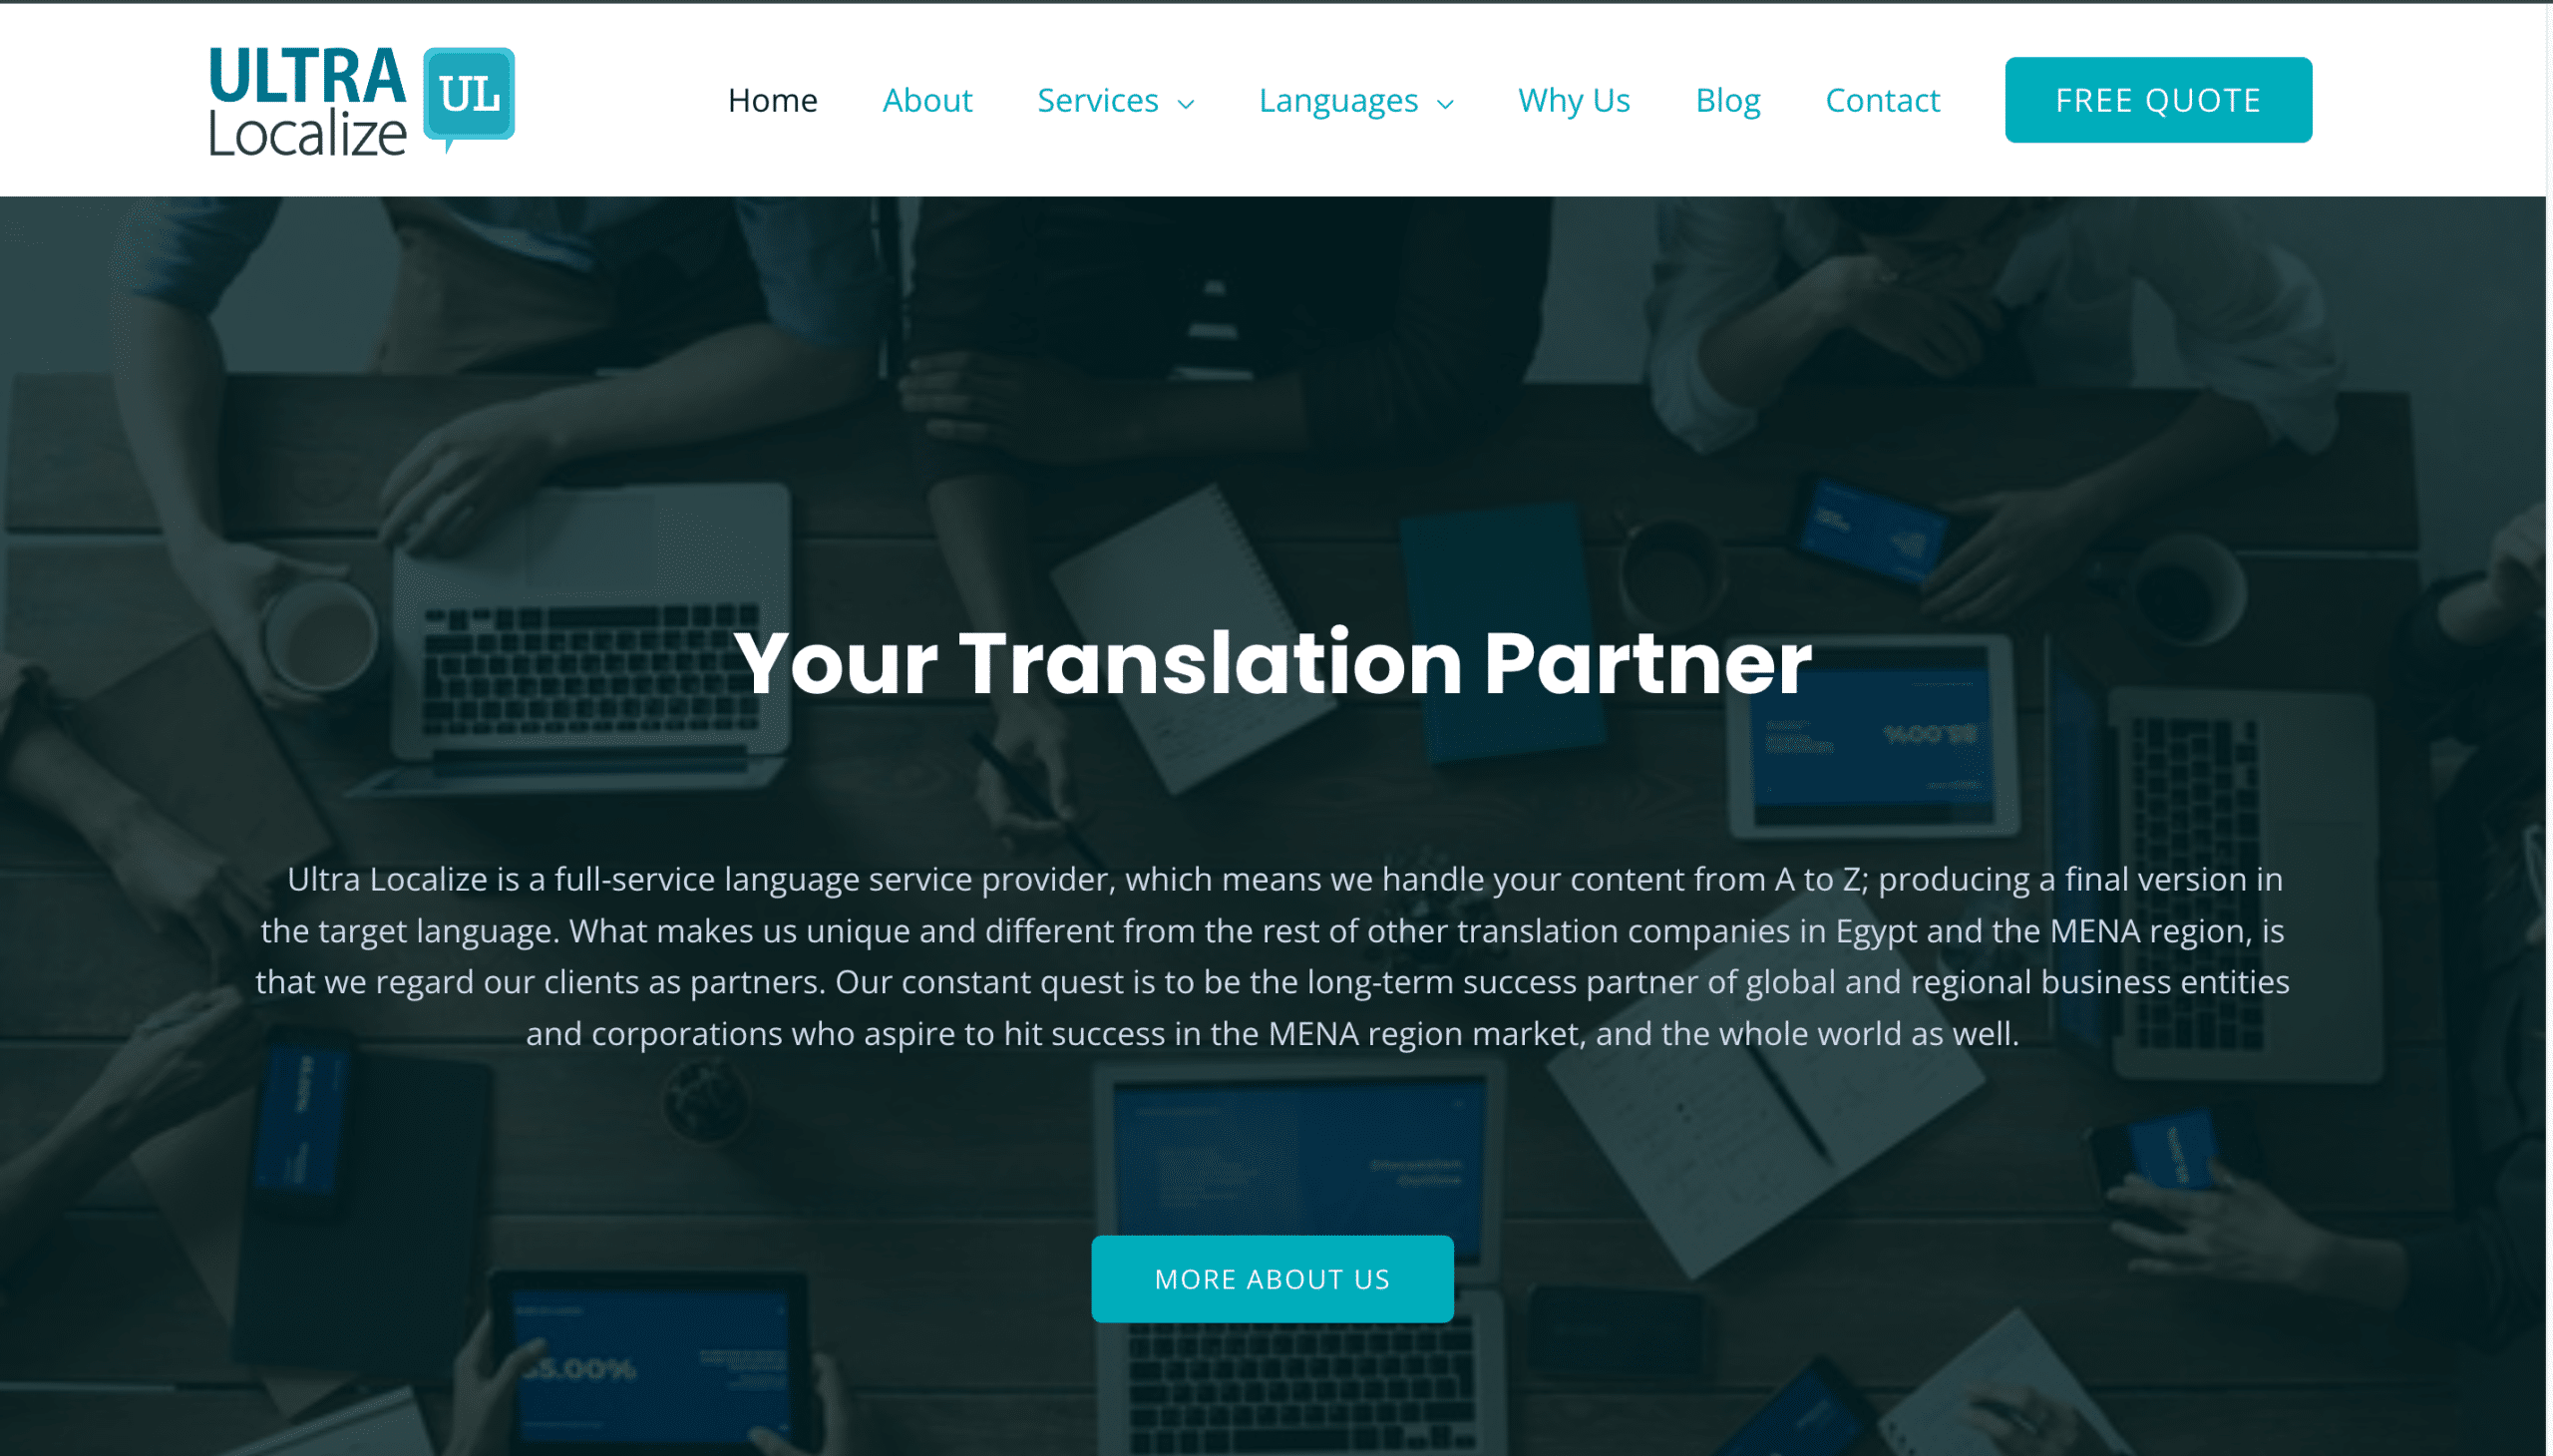 Ultra Localize translation services